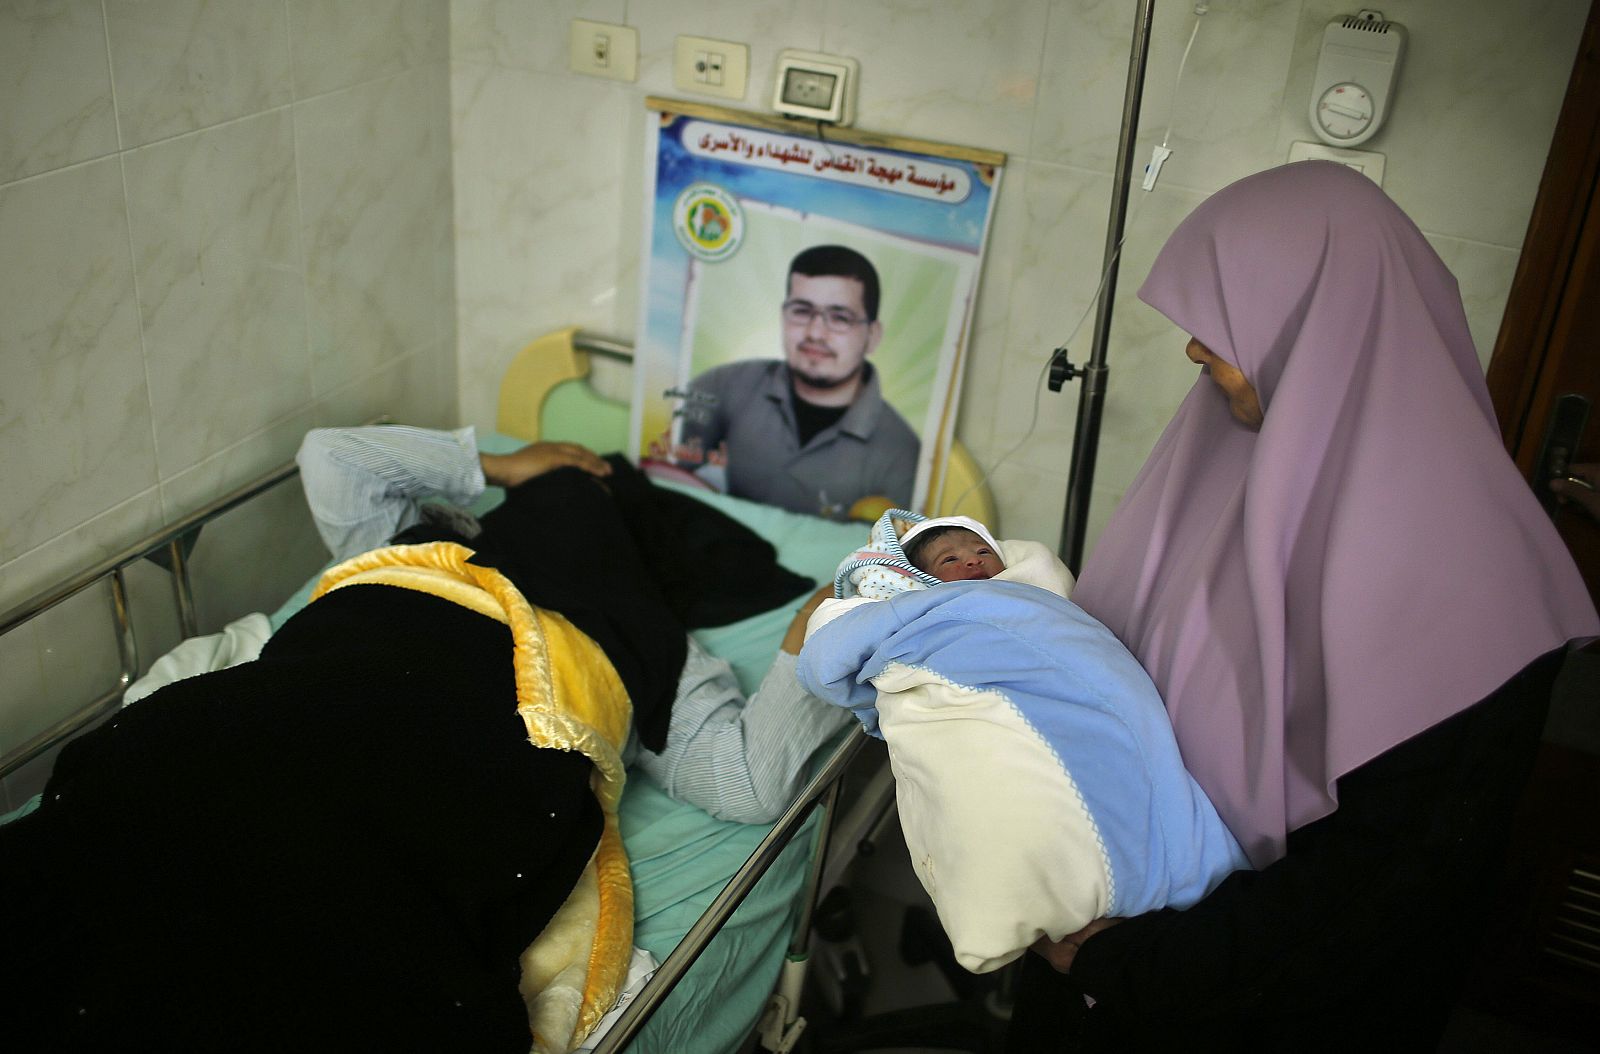 Hana descansa en el hospital con su bebé y con el recuerdo de su marido, preso en una cárcel israelí, en un póster en la pared.